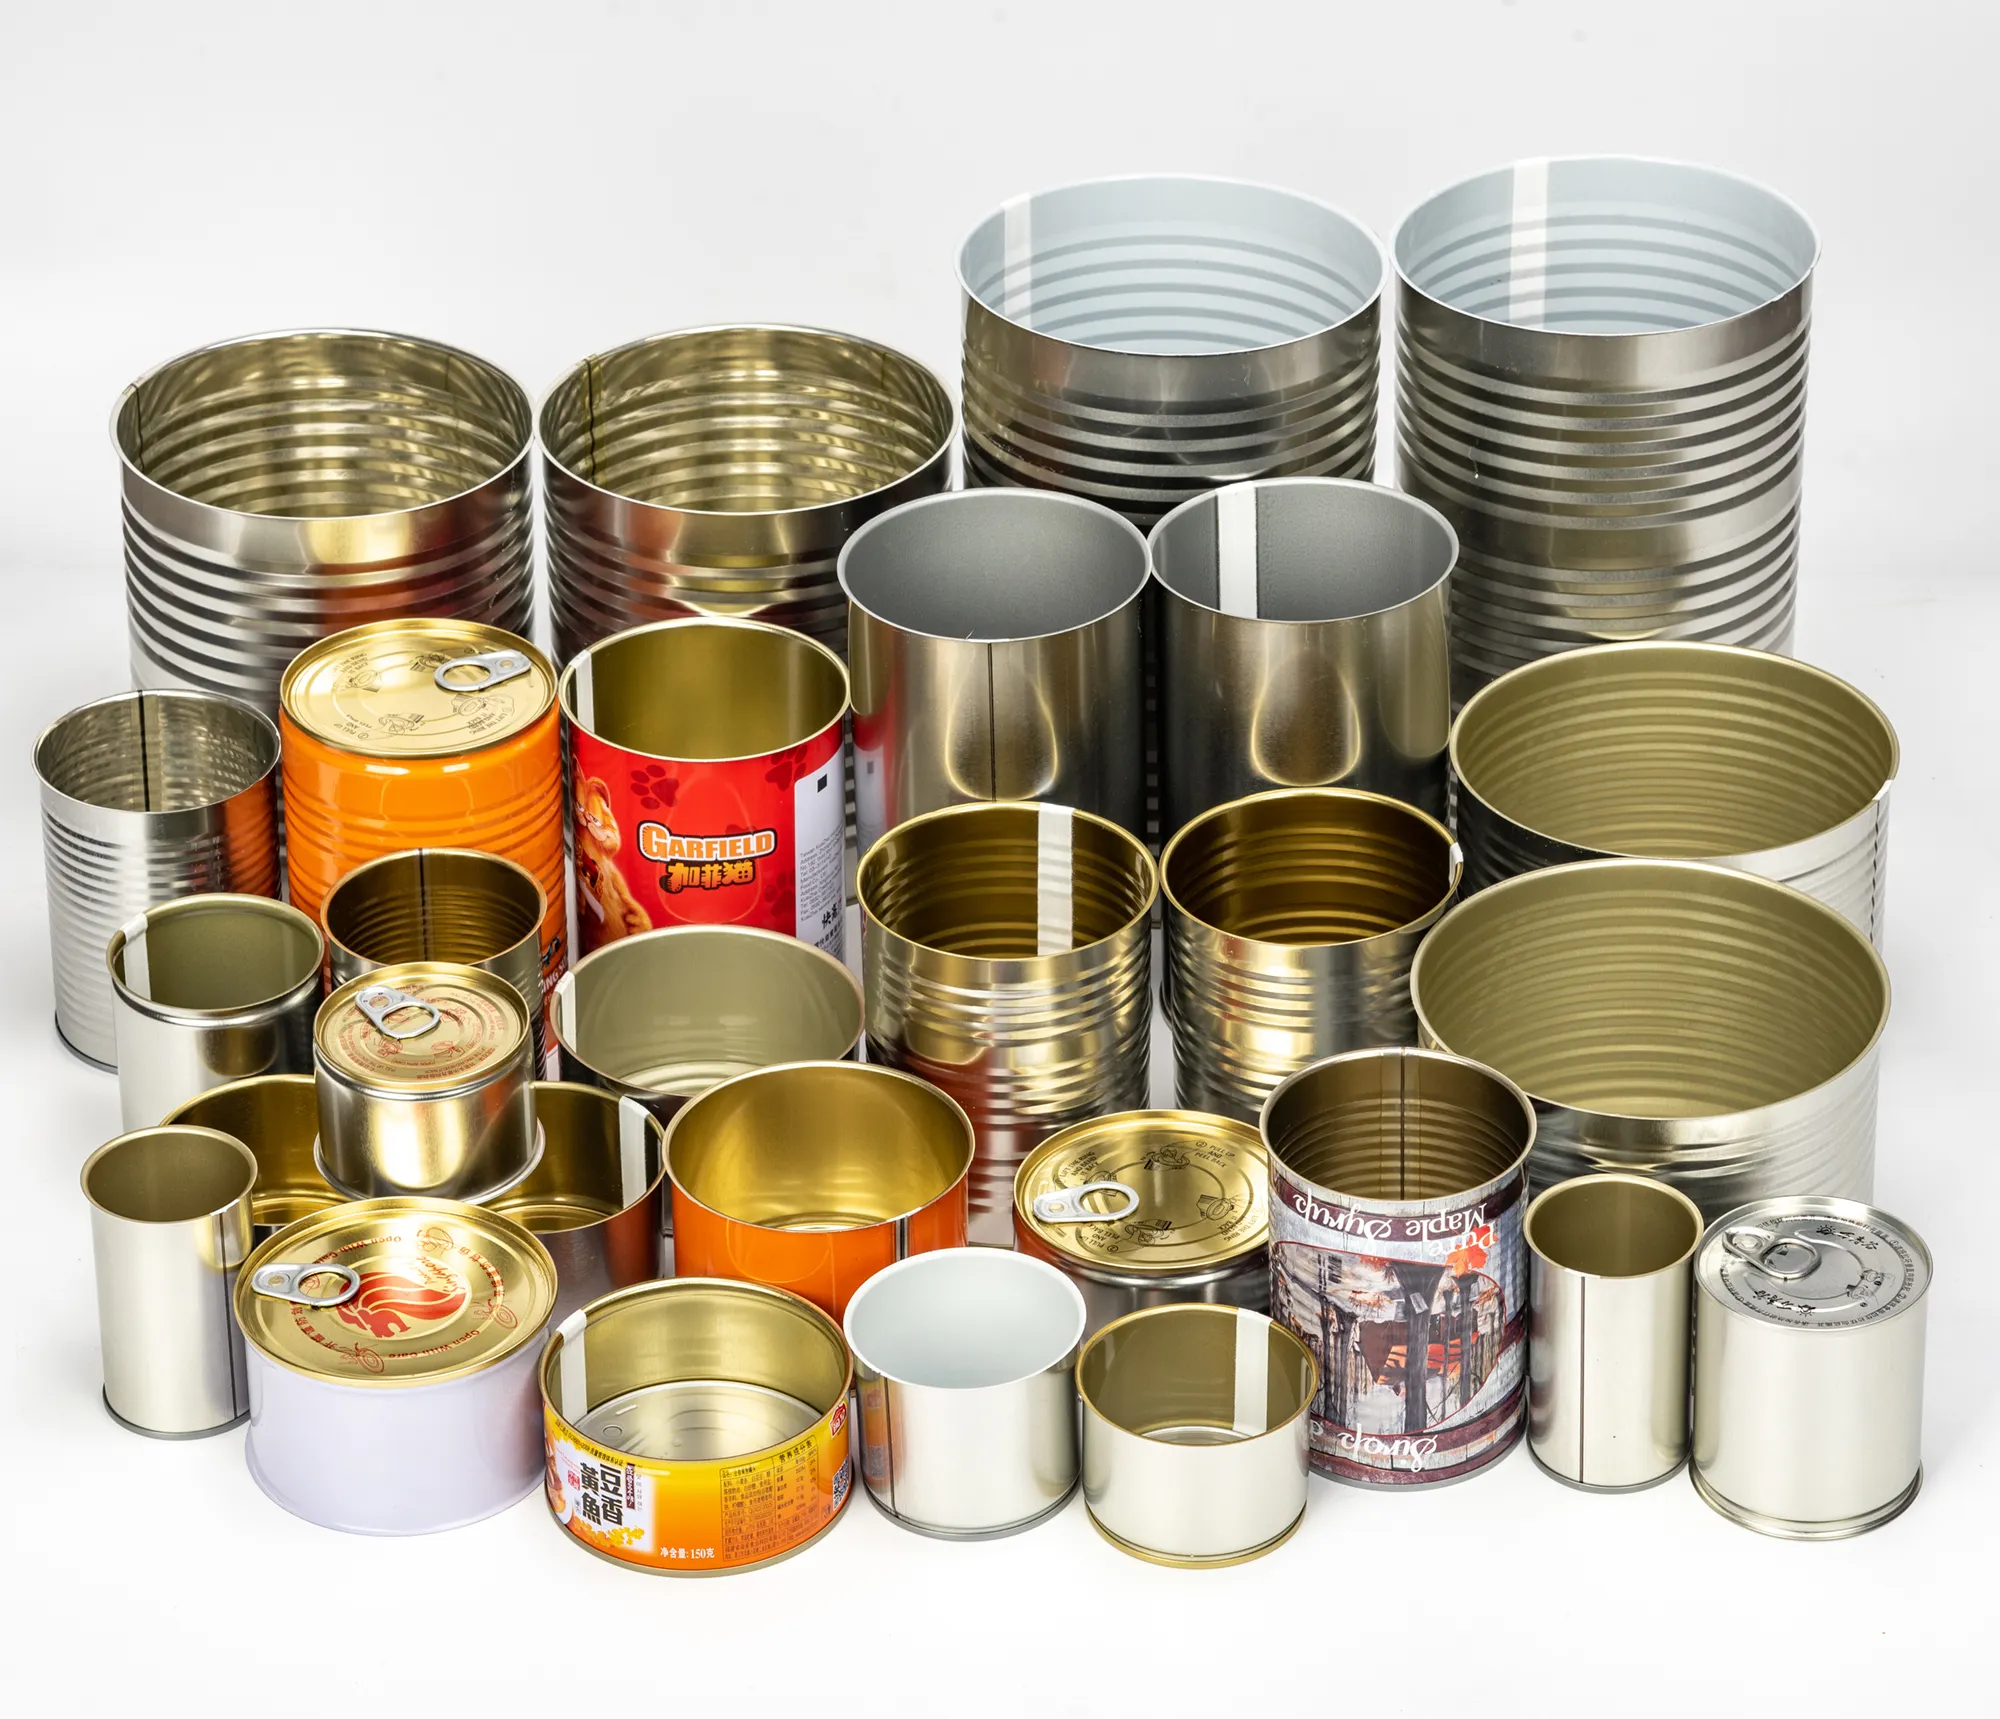 Hoge Kwaliteit 7113 # Groothandel Lege Food Grade Blikje Metalen Blikje Zonder Afdrukken Met Gemakkelijk Open Deksel Voor voedsel Verpakking